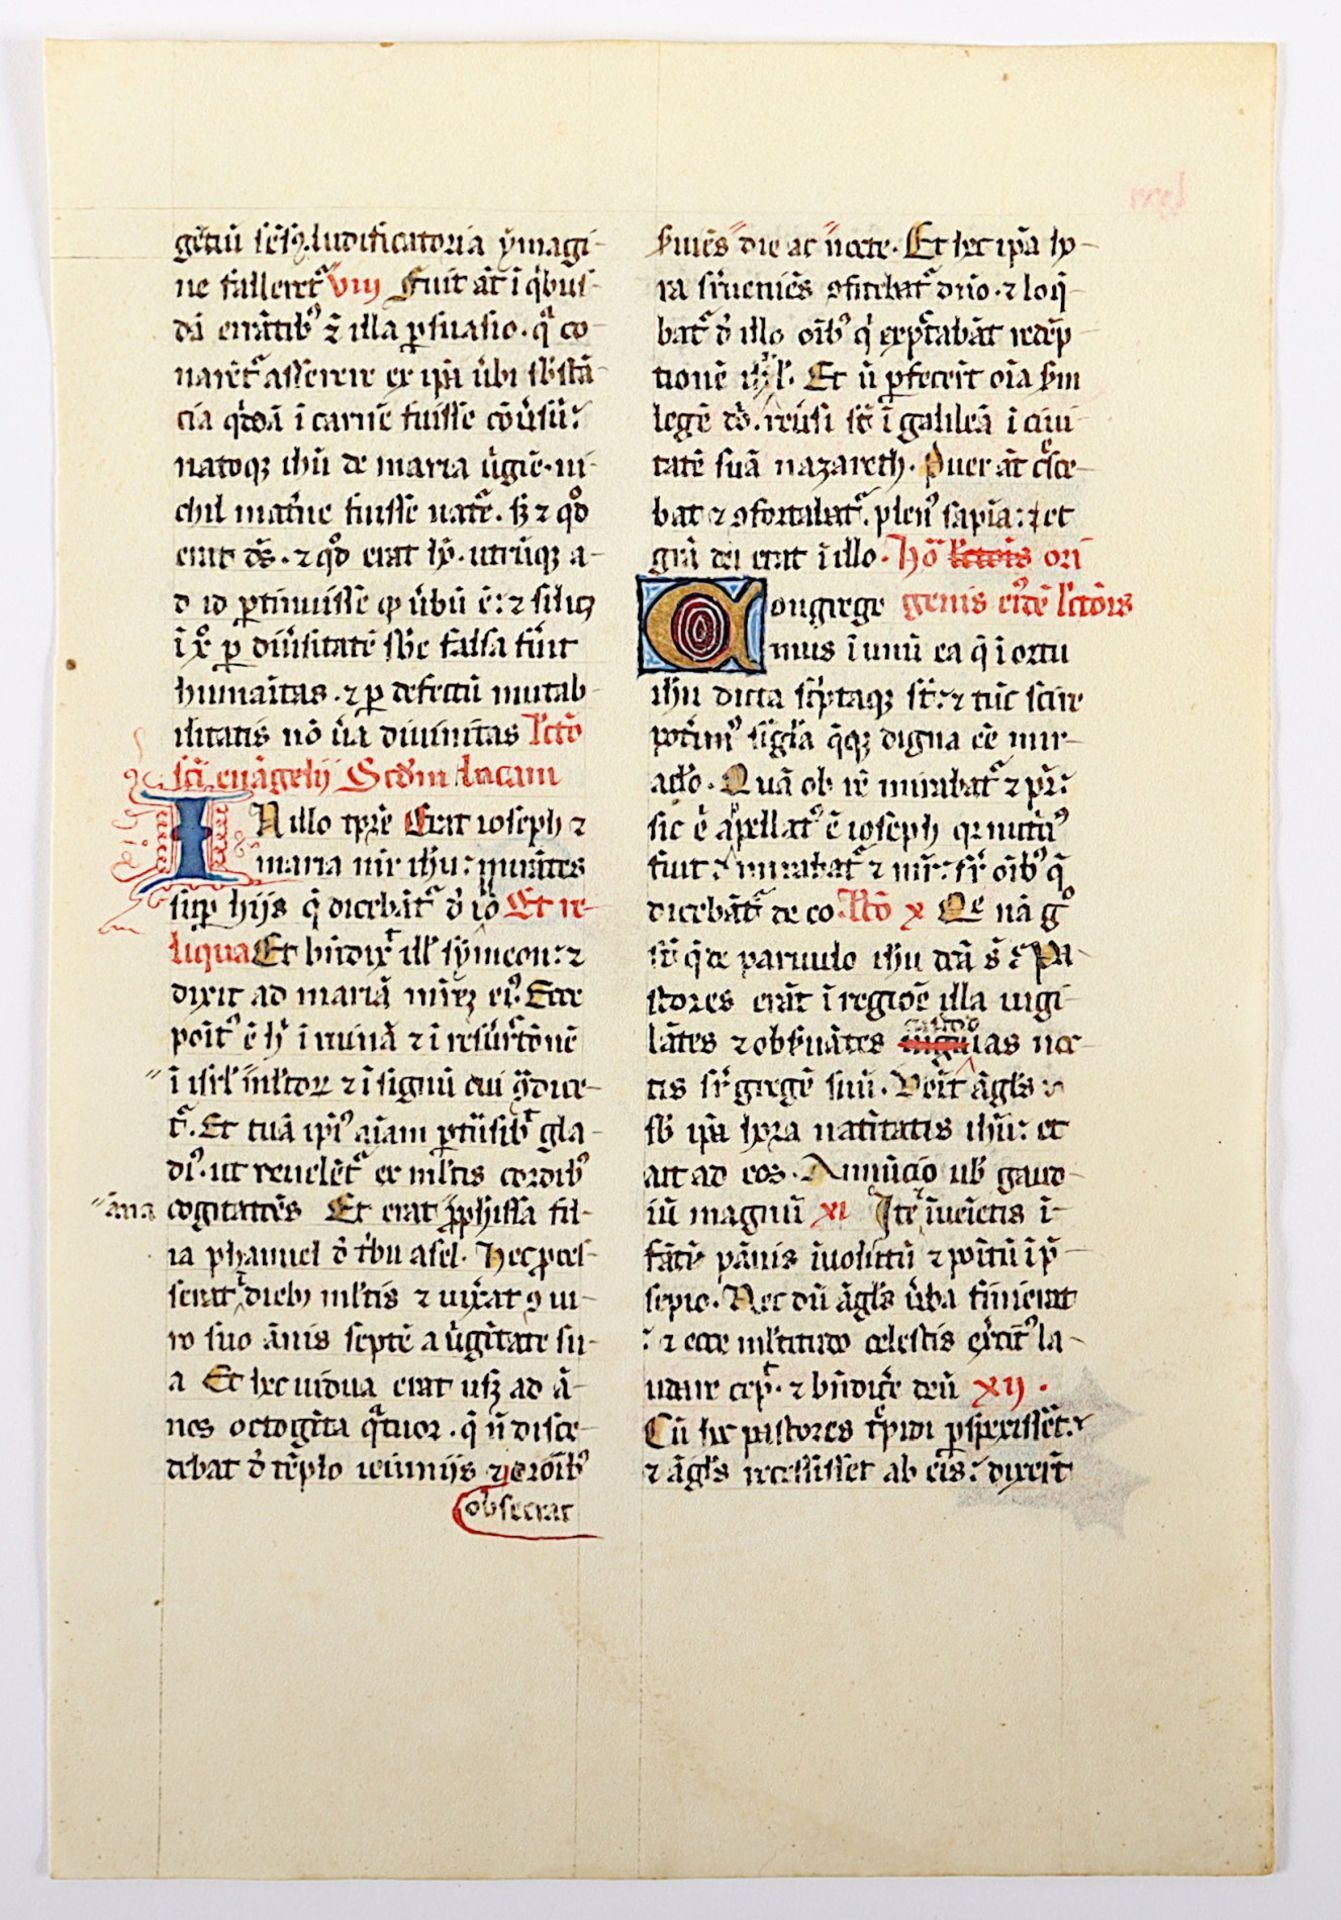 BLATT EINER MITTELALTERLICHEN BREVIARIUM-HANDSCHRIFT, Spanien, um 1425, beidseitig lateinischer Tex - Bild 2 aus 2